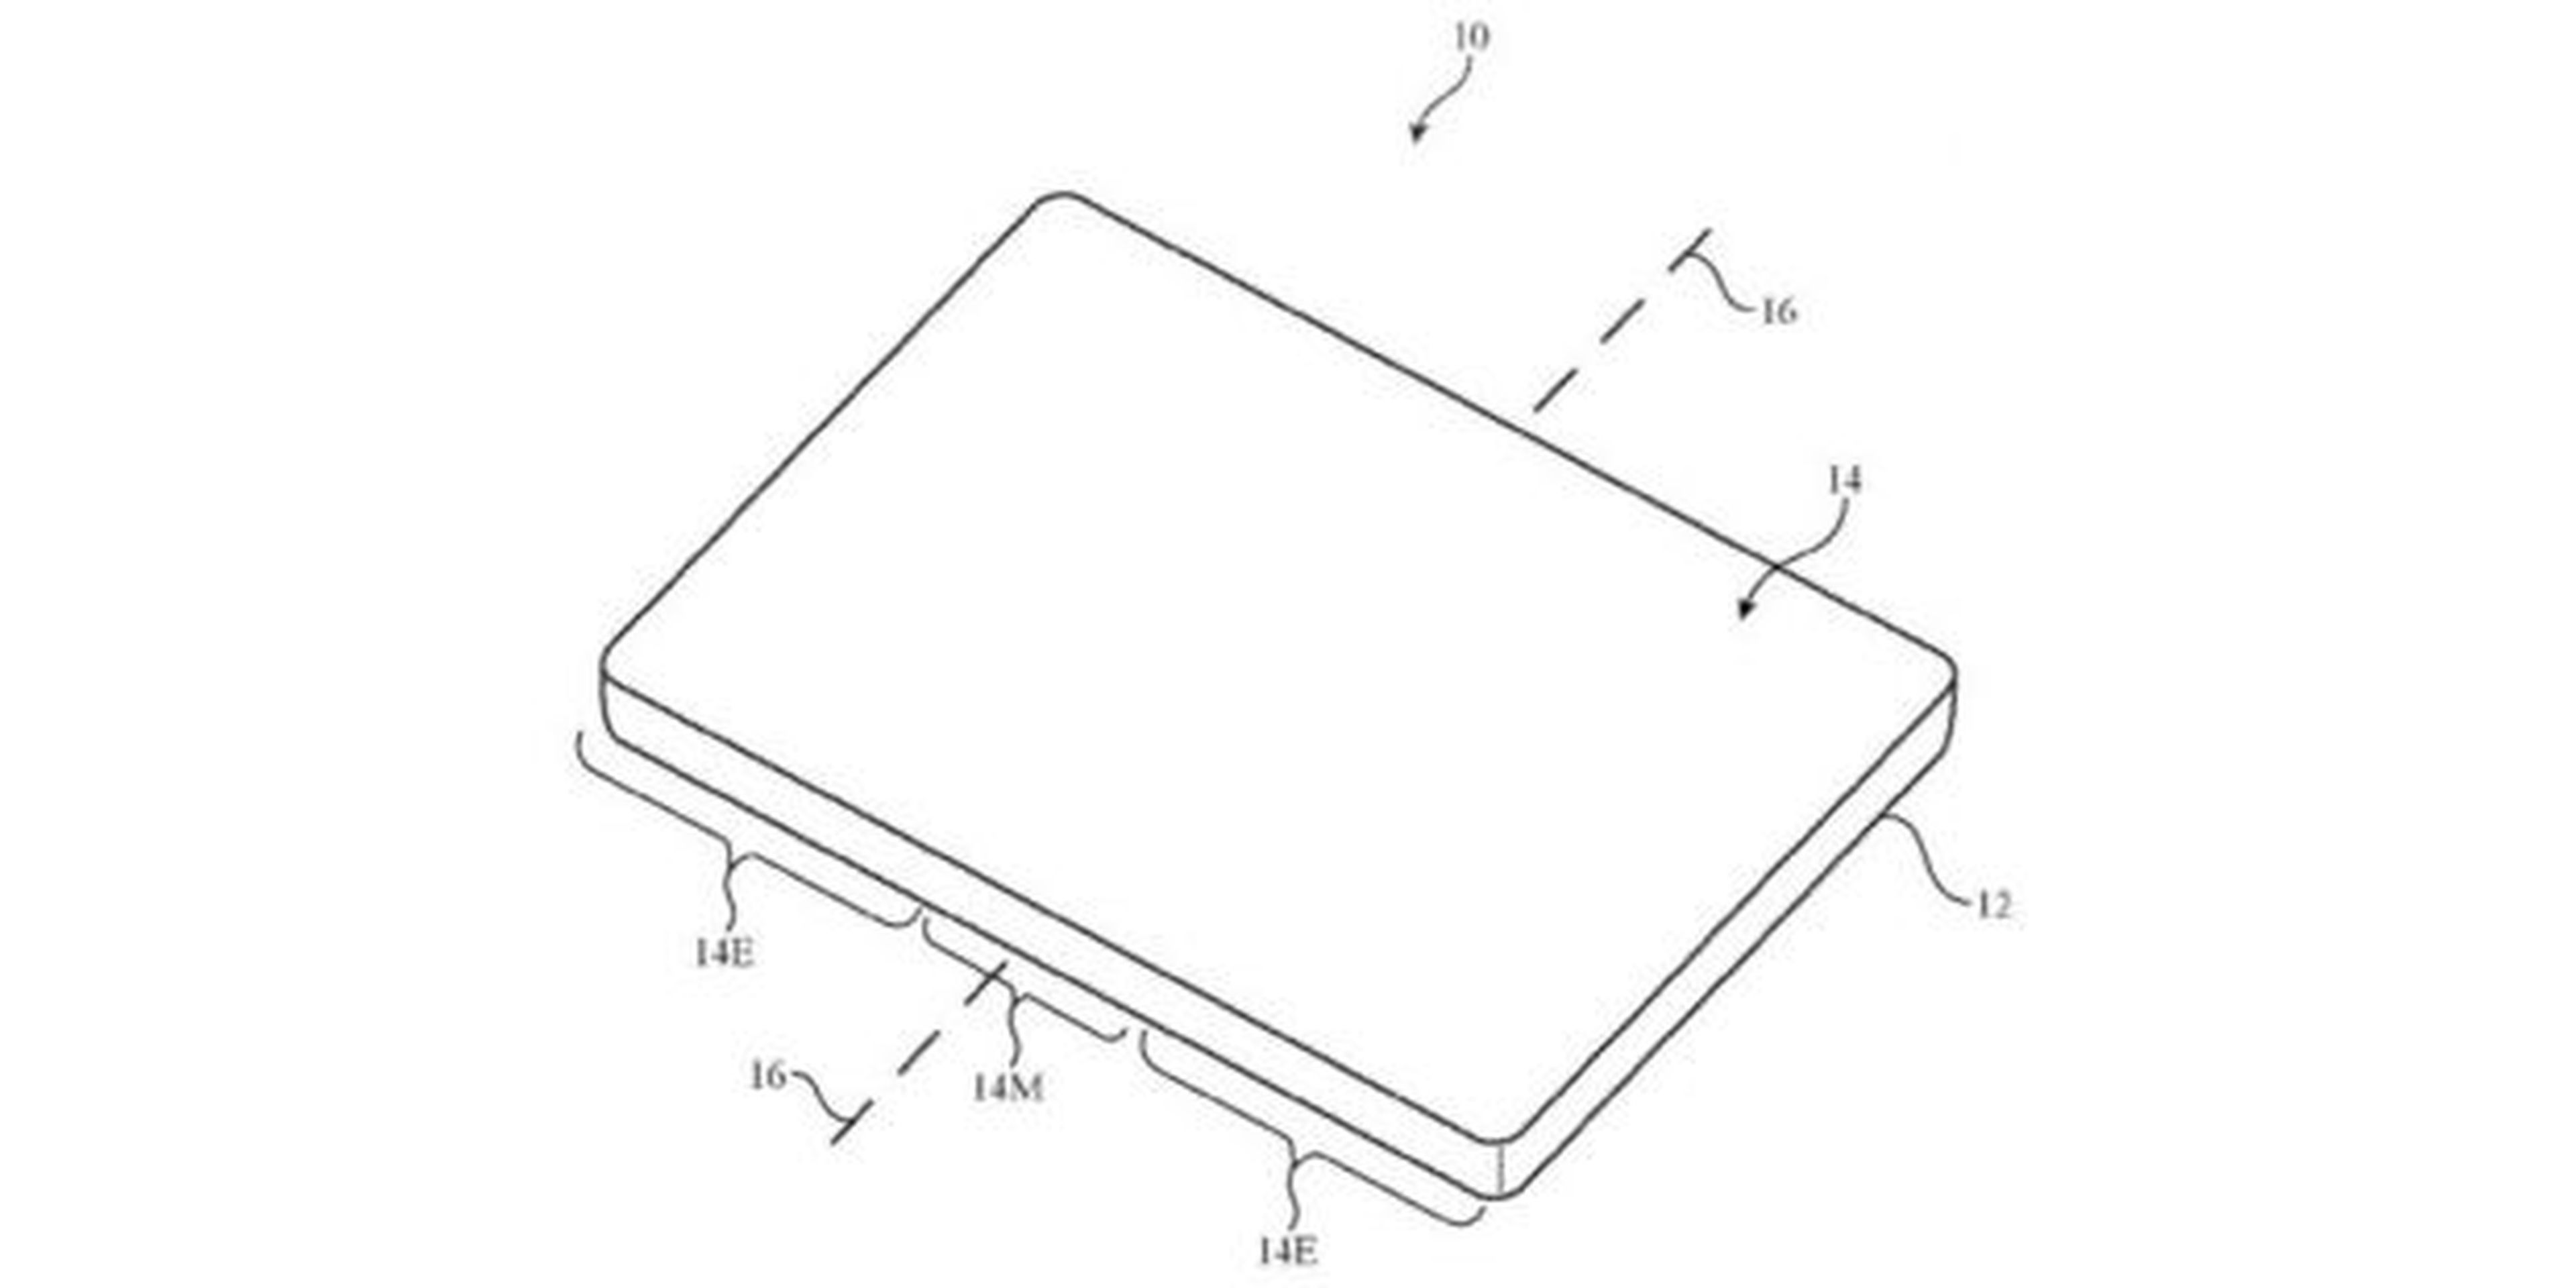 Patente iphone plegable